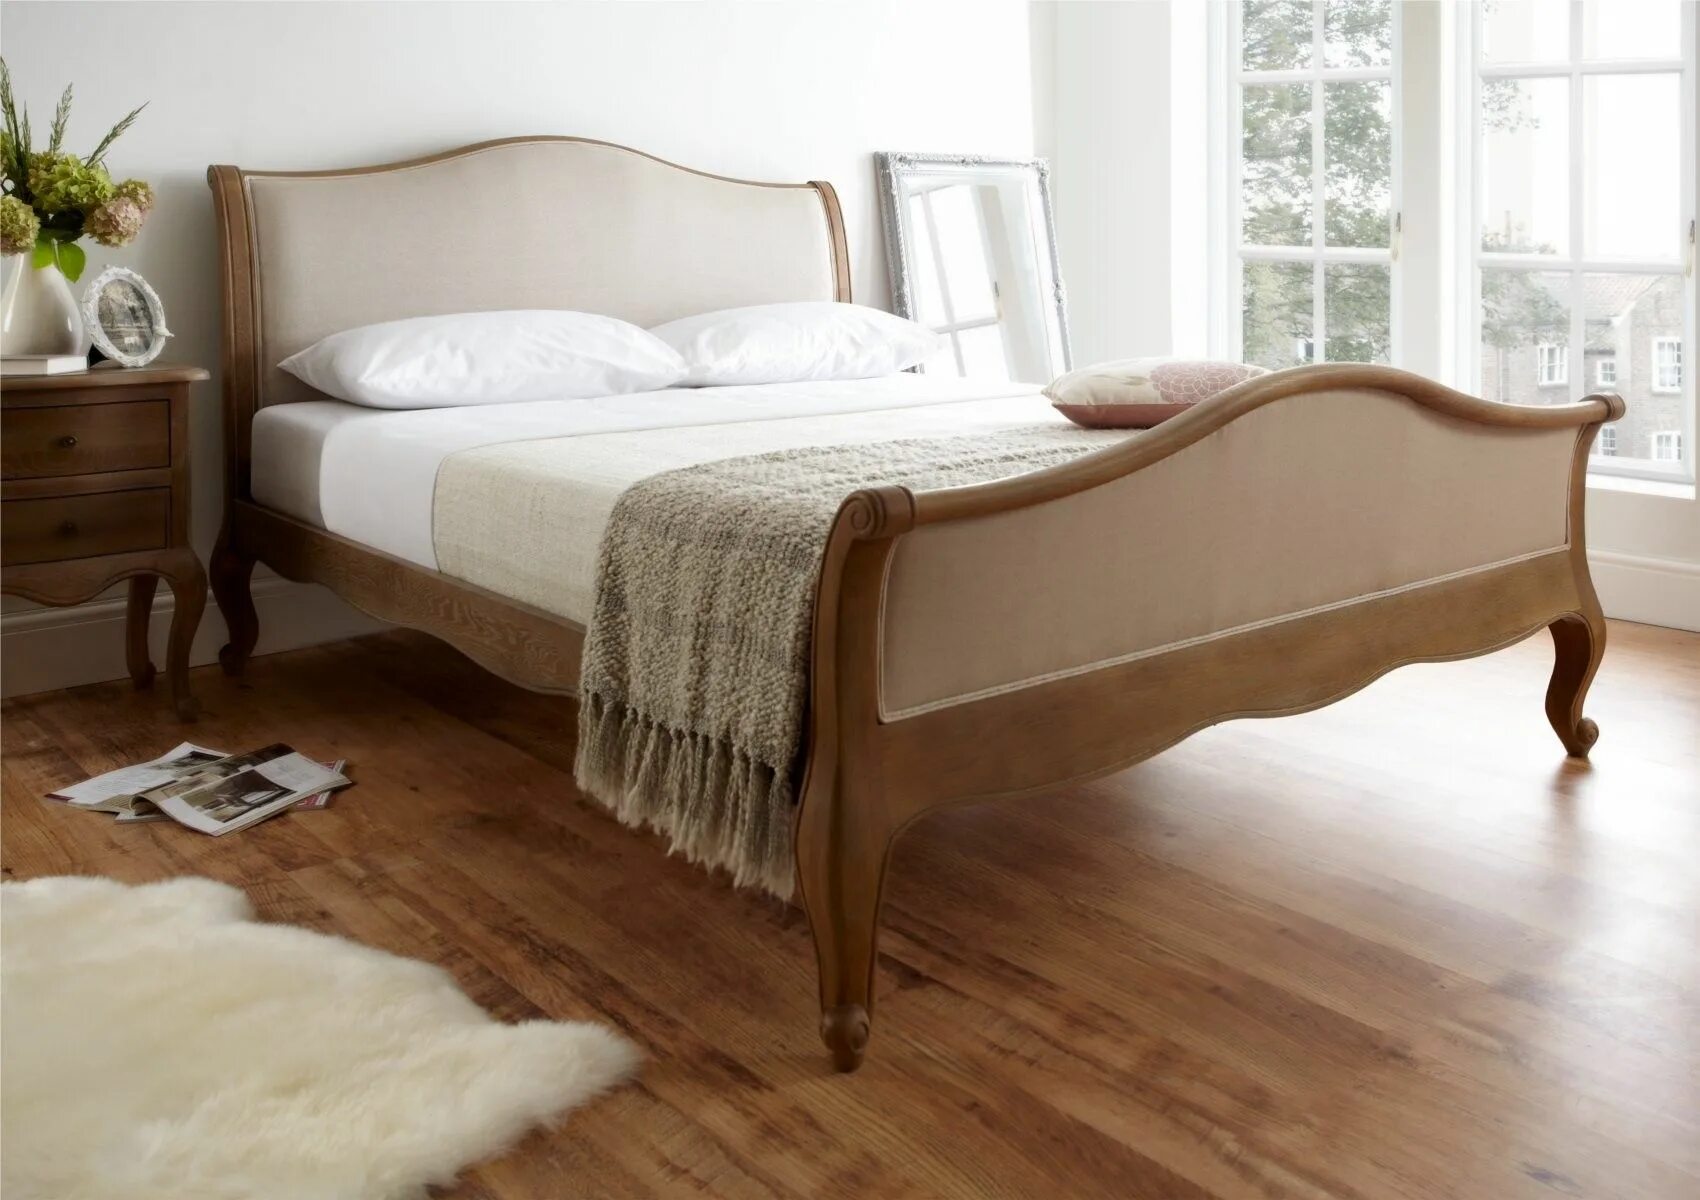 Скрип деревянных кроватей. Кровати Кинг сайз из массива. Кровать с деревянным изголовьем. Кровать из натурального дерева. Кровать деревянная мягкая.